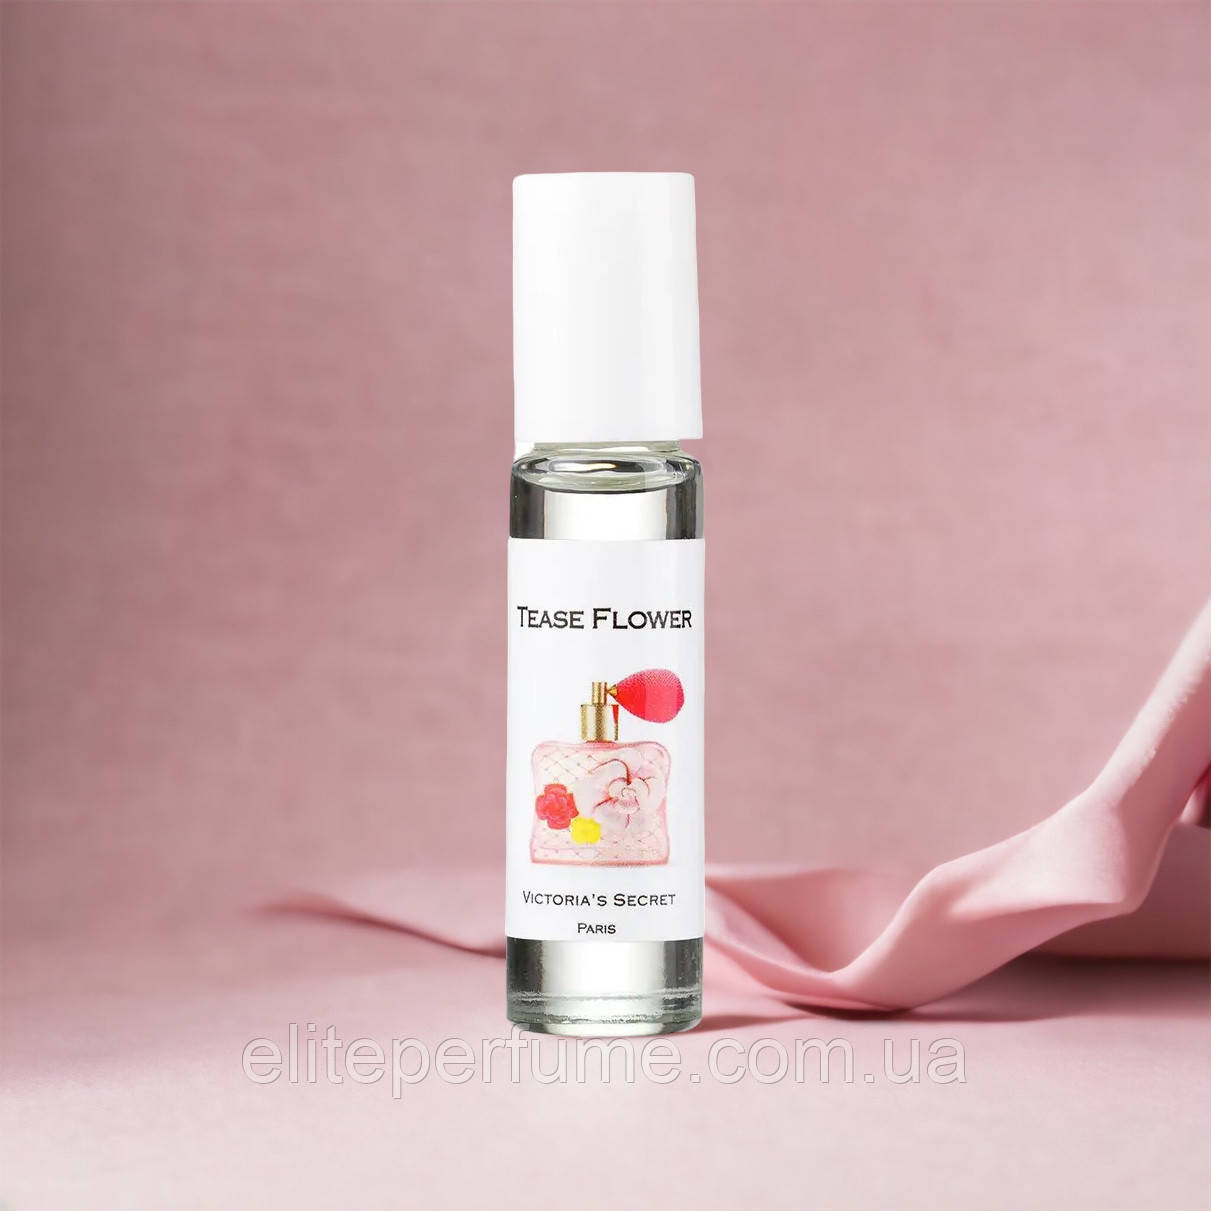 Олійні парфуми Victoria's Secret Tease Flower 10 мл Франція